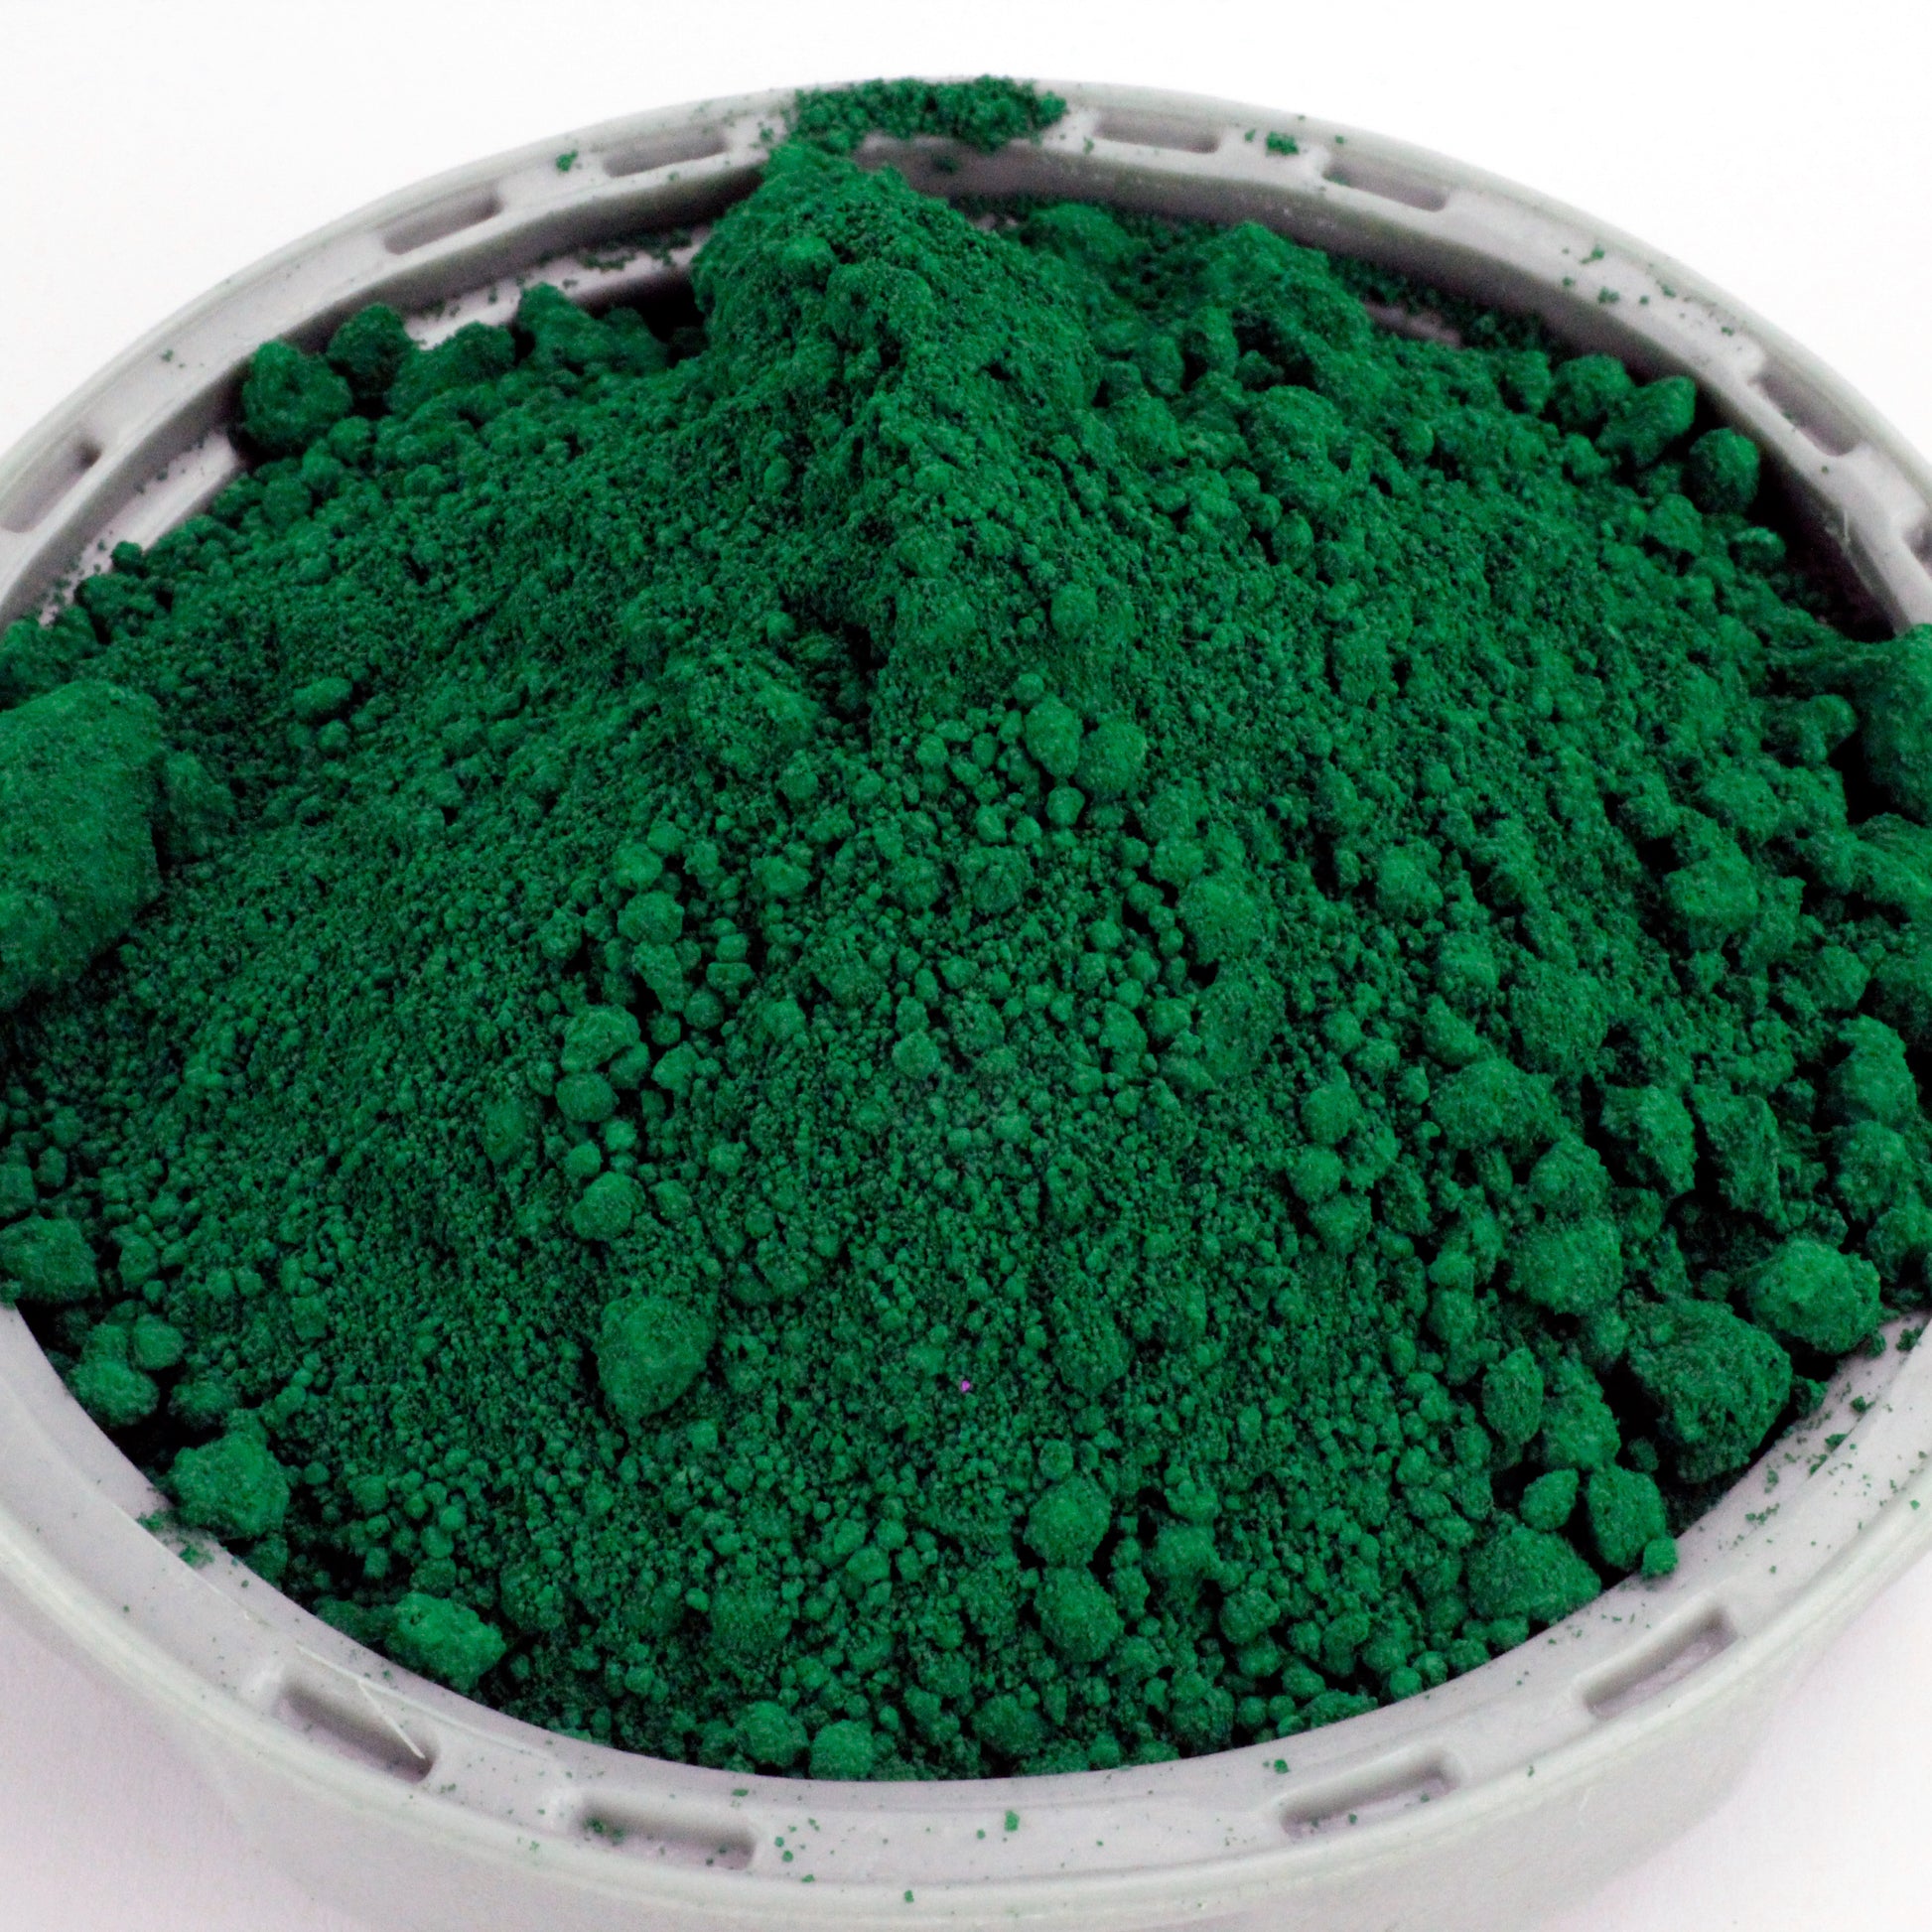 Grünfarbe für Beton / Zement / Gips - 25kg Sack - Farbprodukt